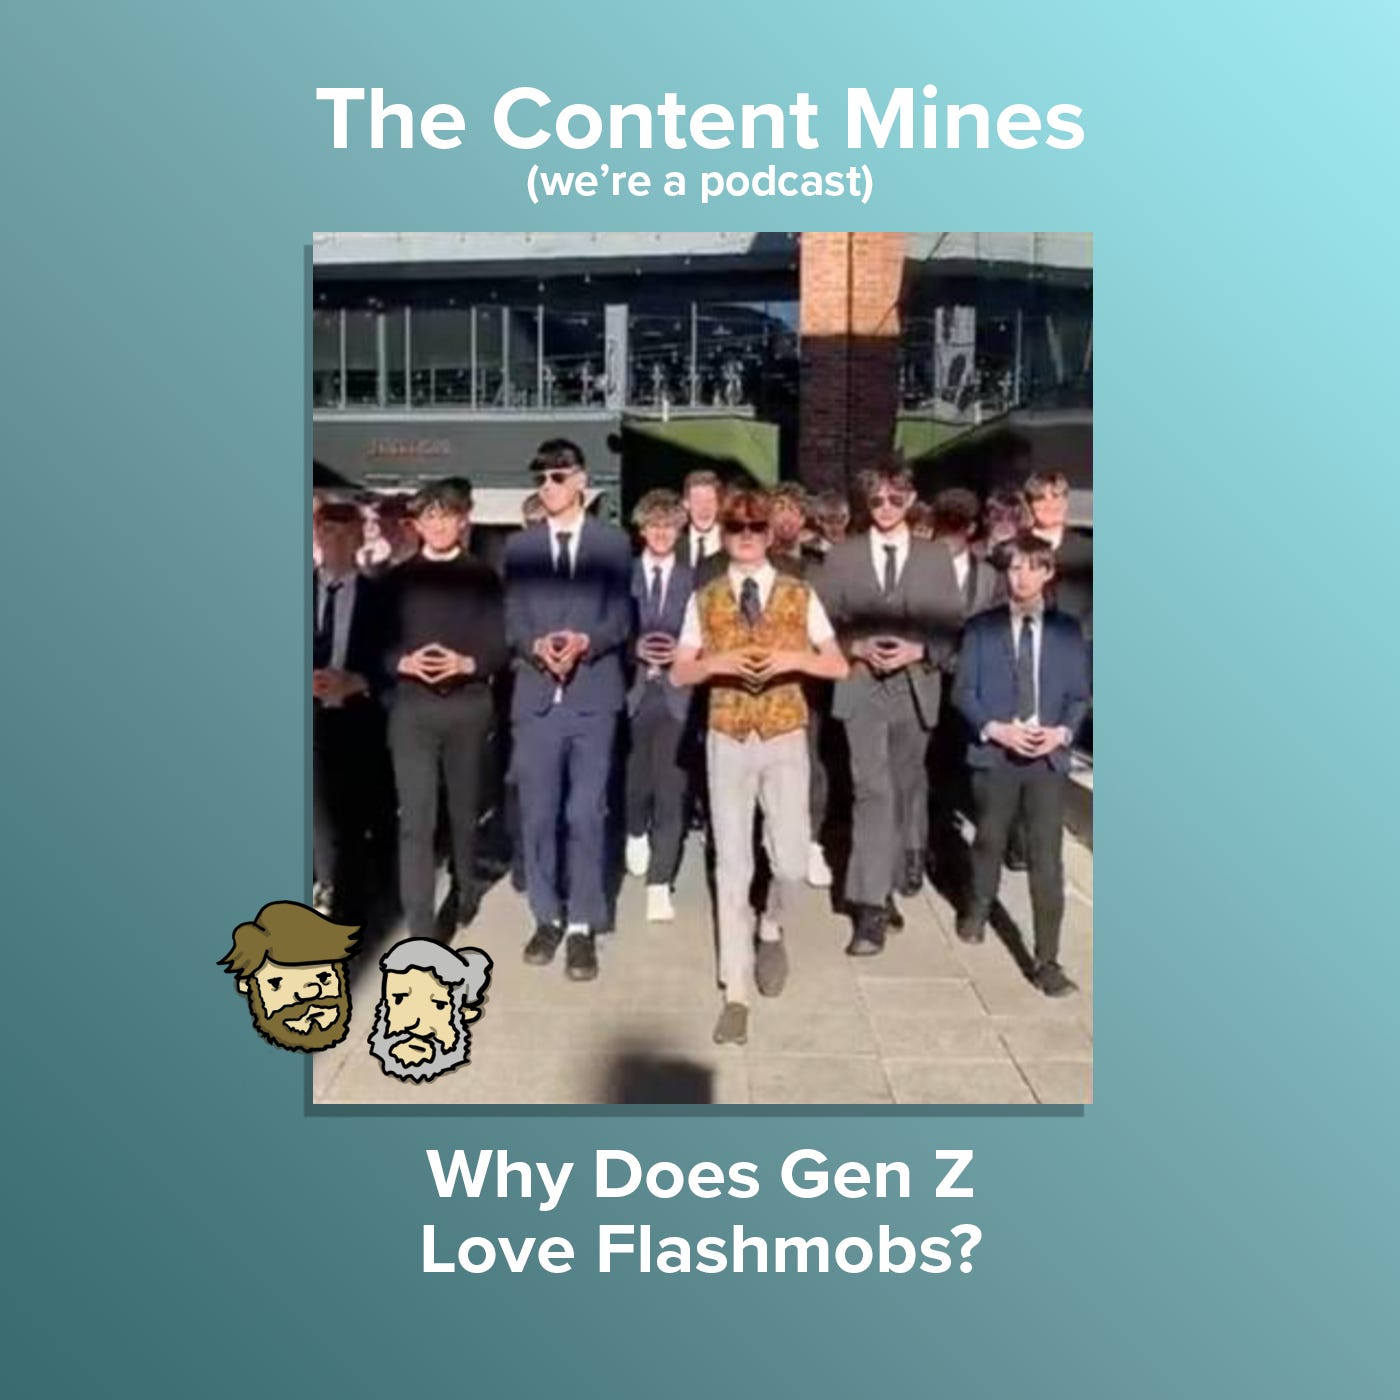 Why Does Gen Z Love Flashmobs?